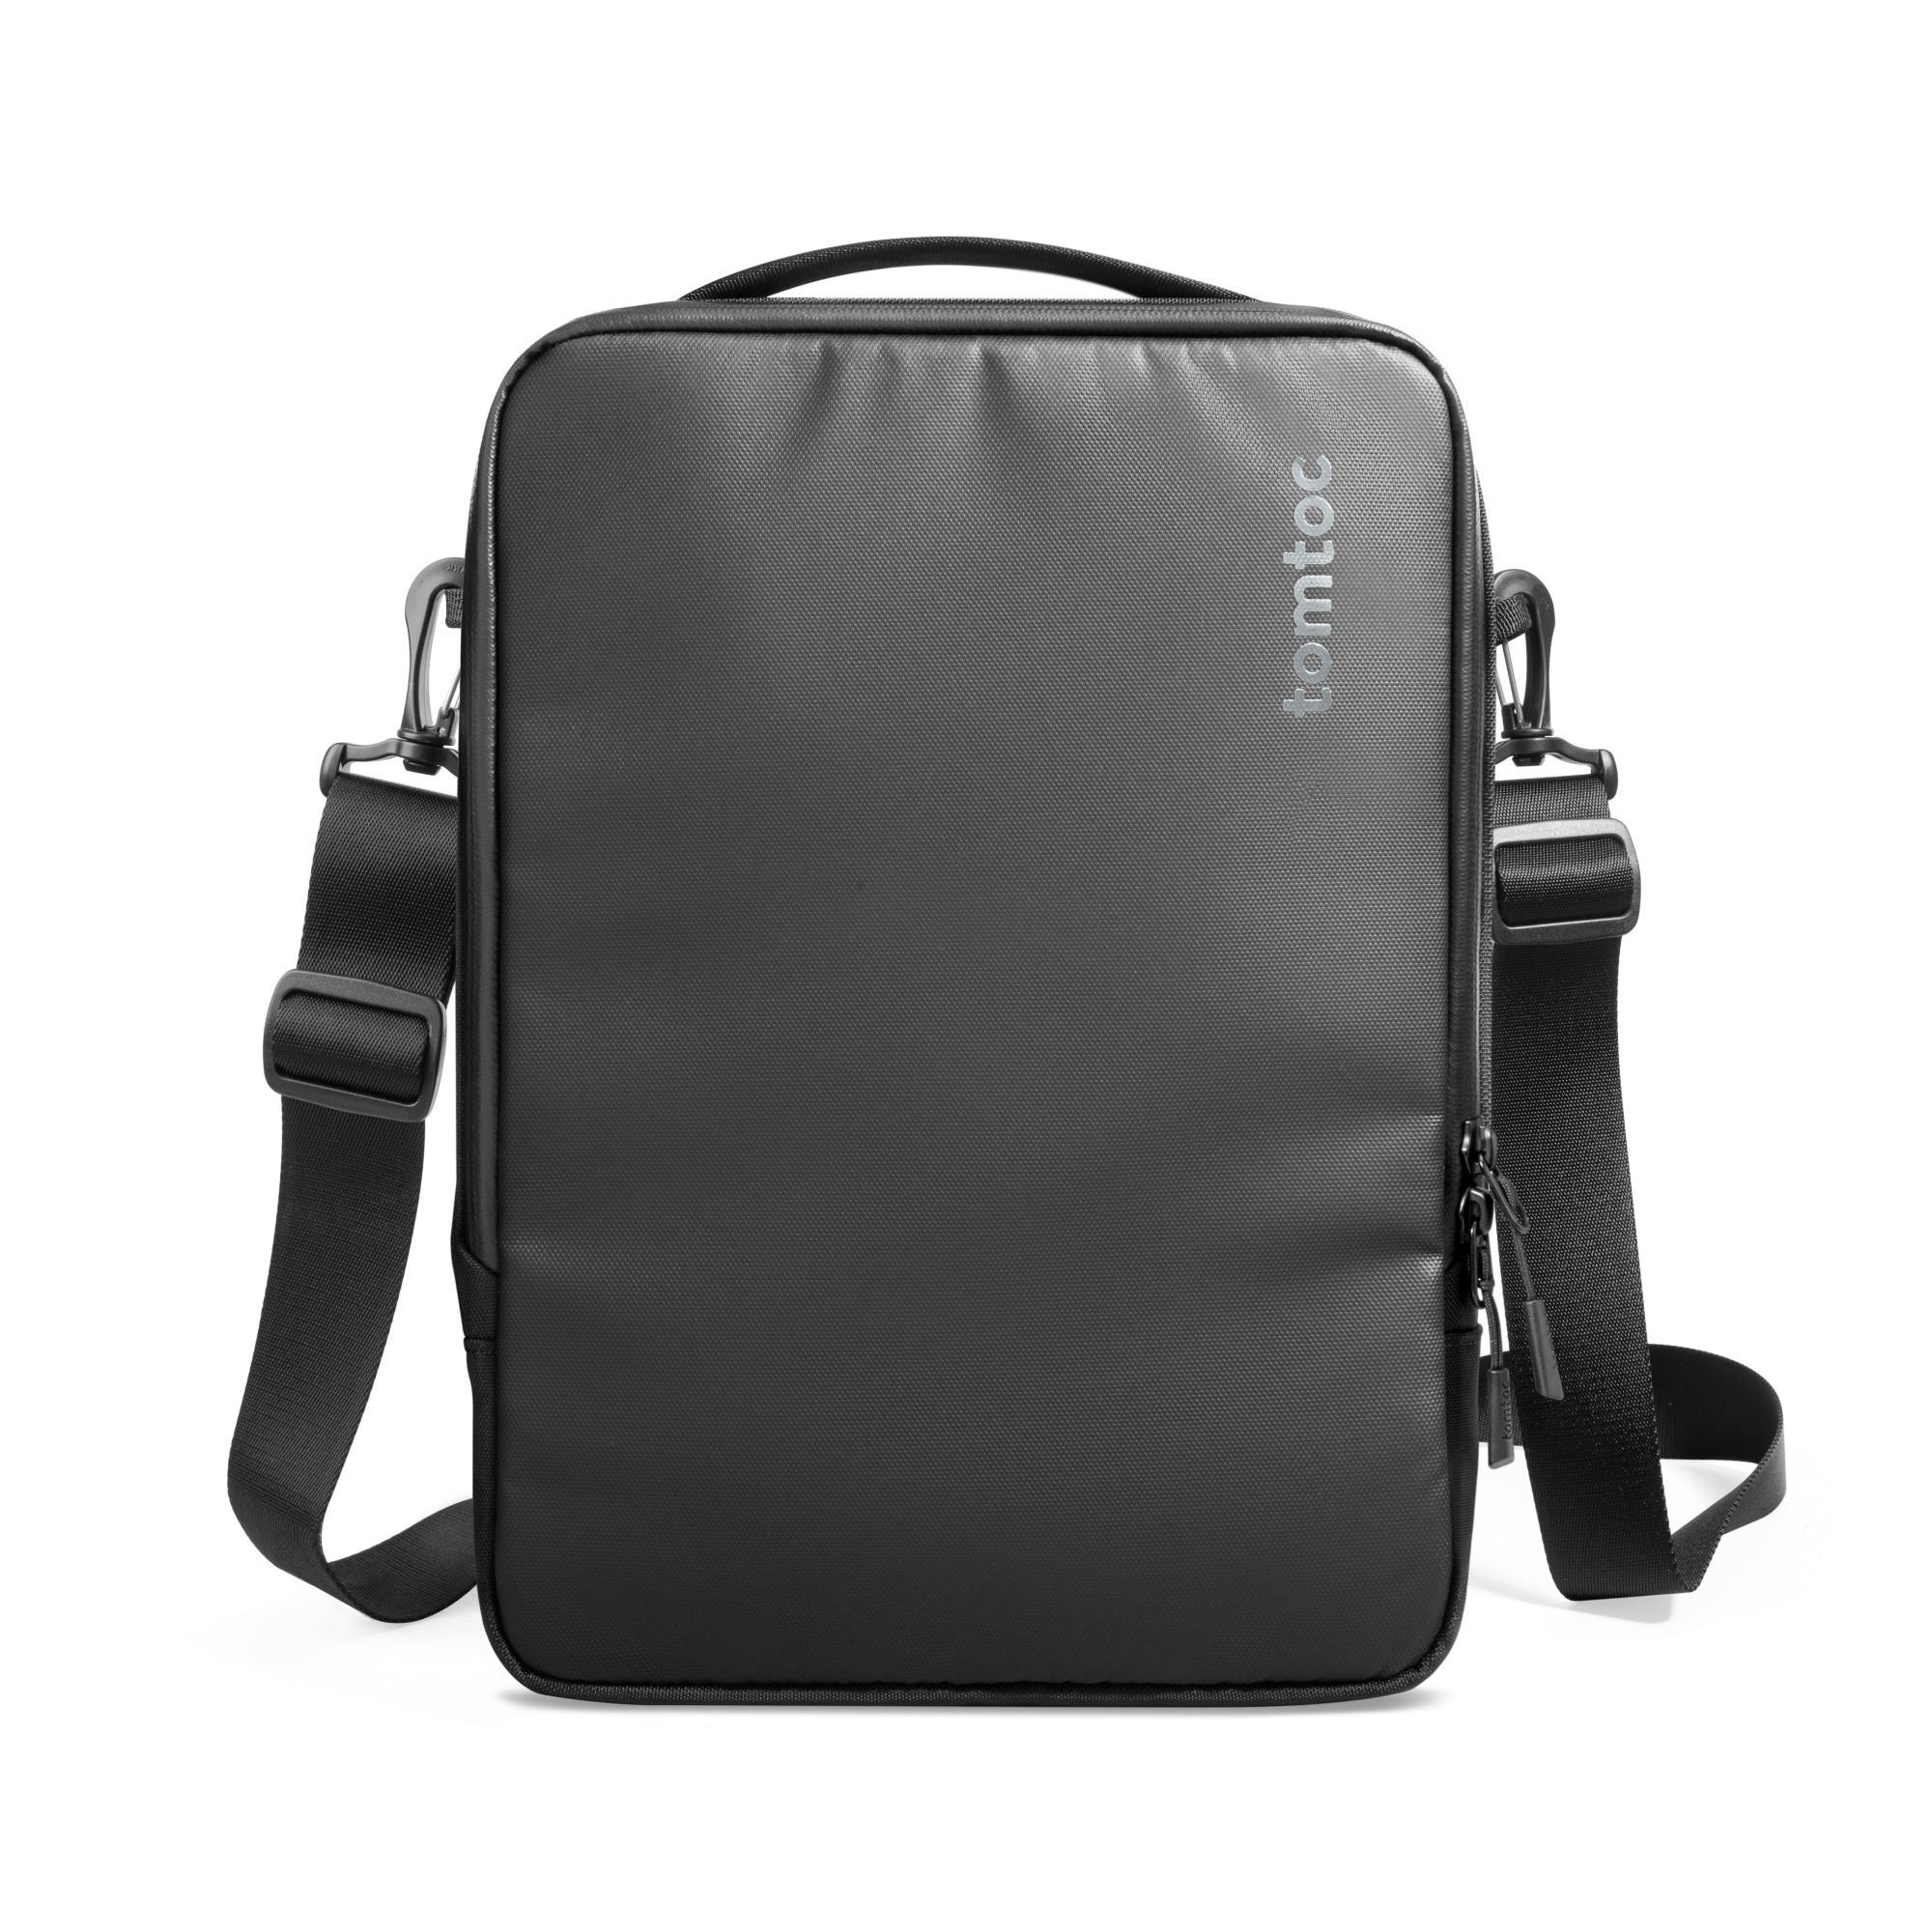 DefenderACE-A04 Laptop Shoulder Bag For 14-inch MacBook Pro